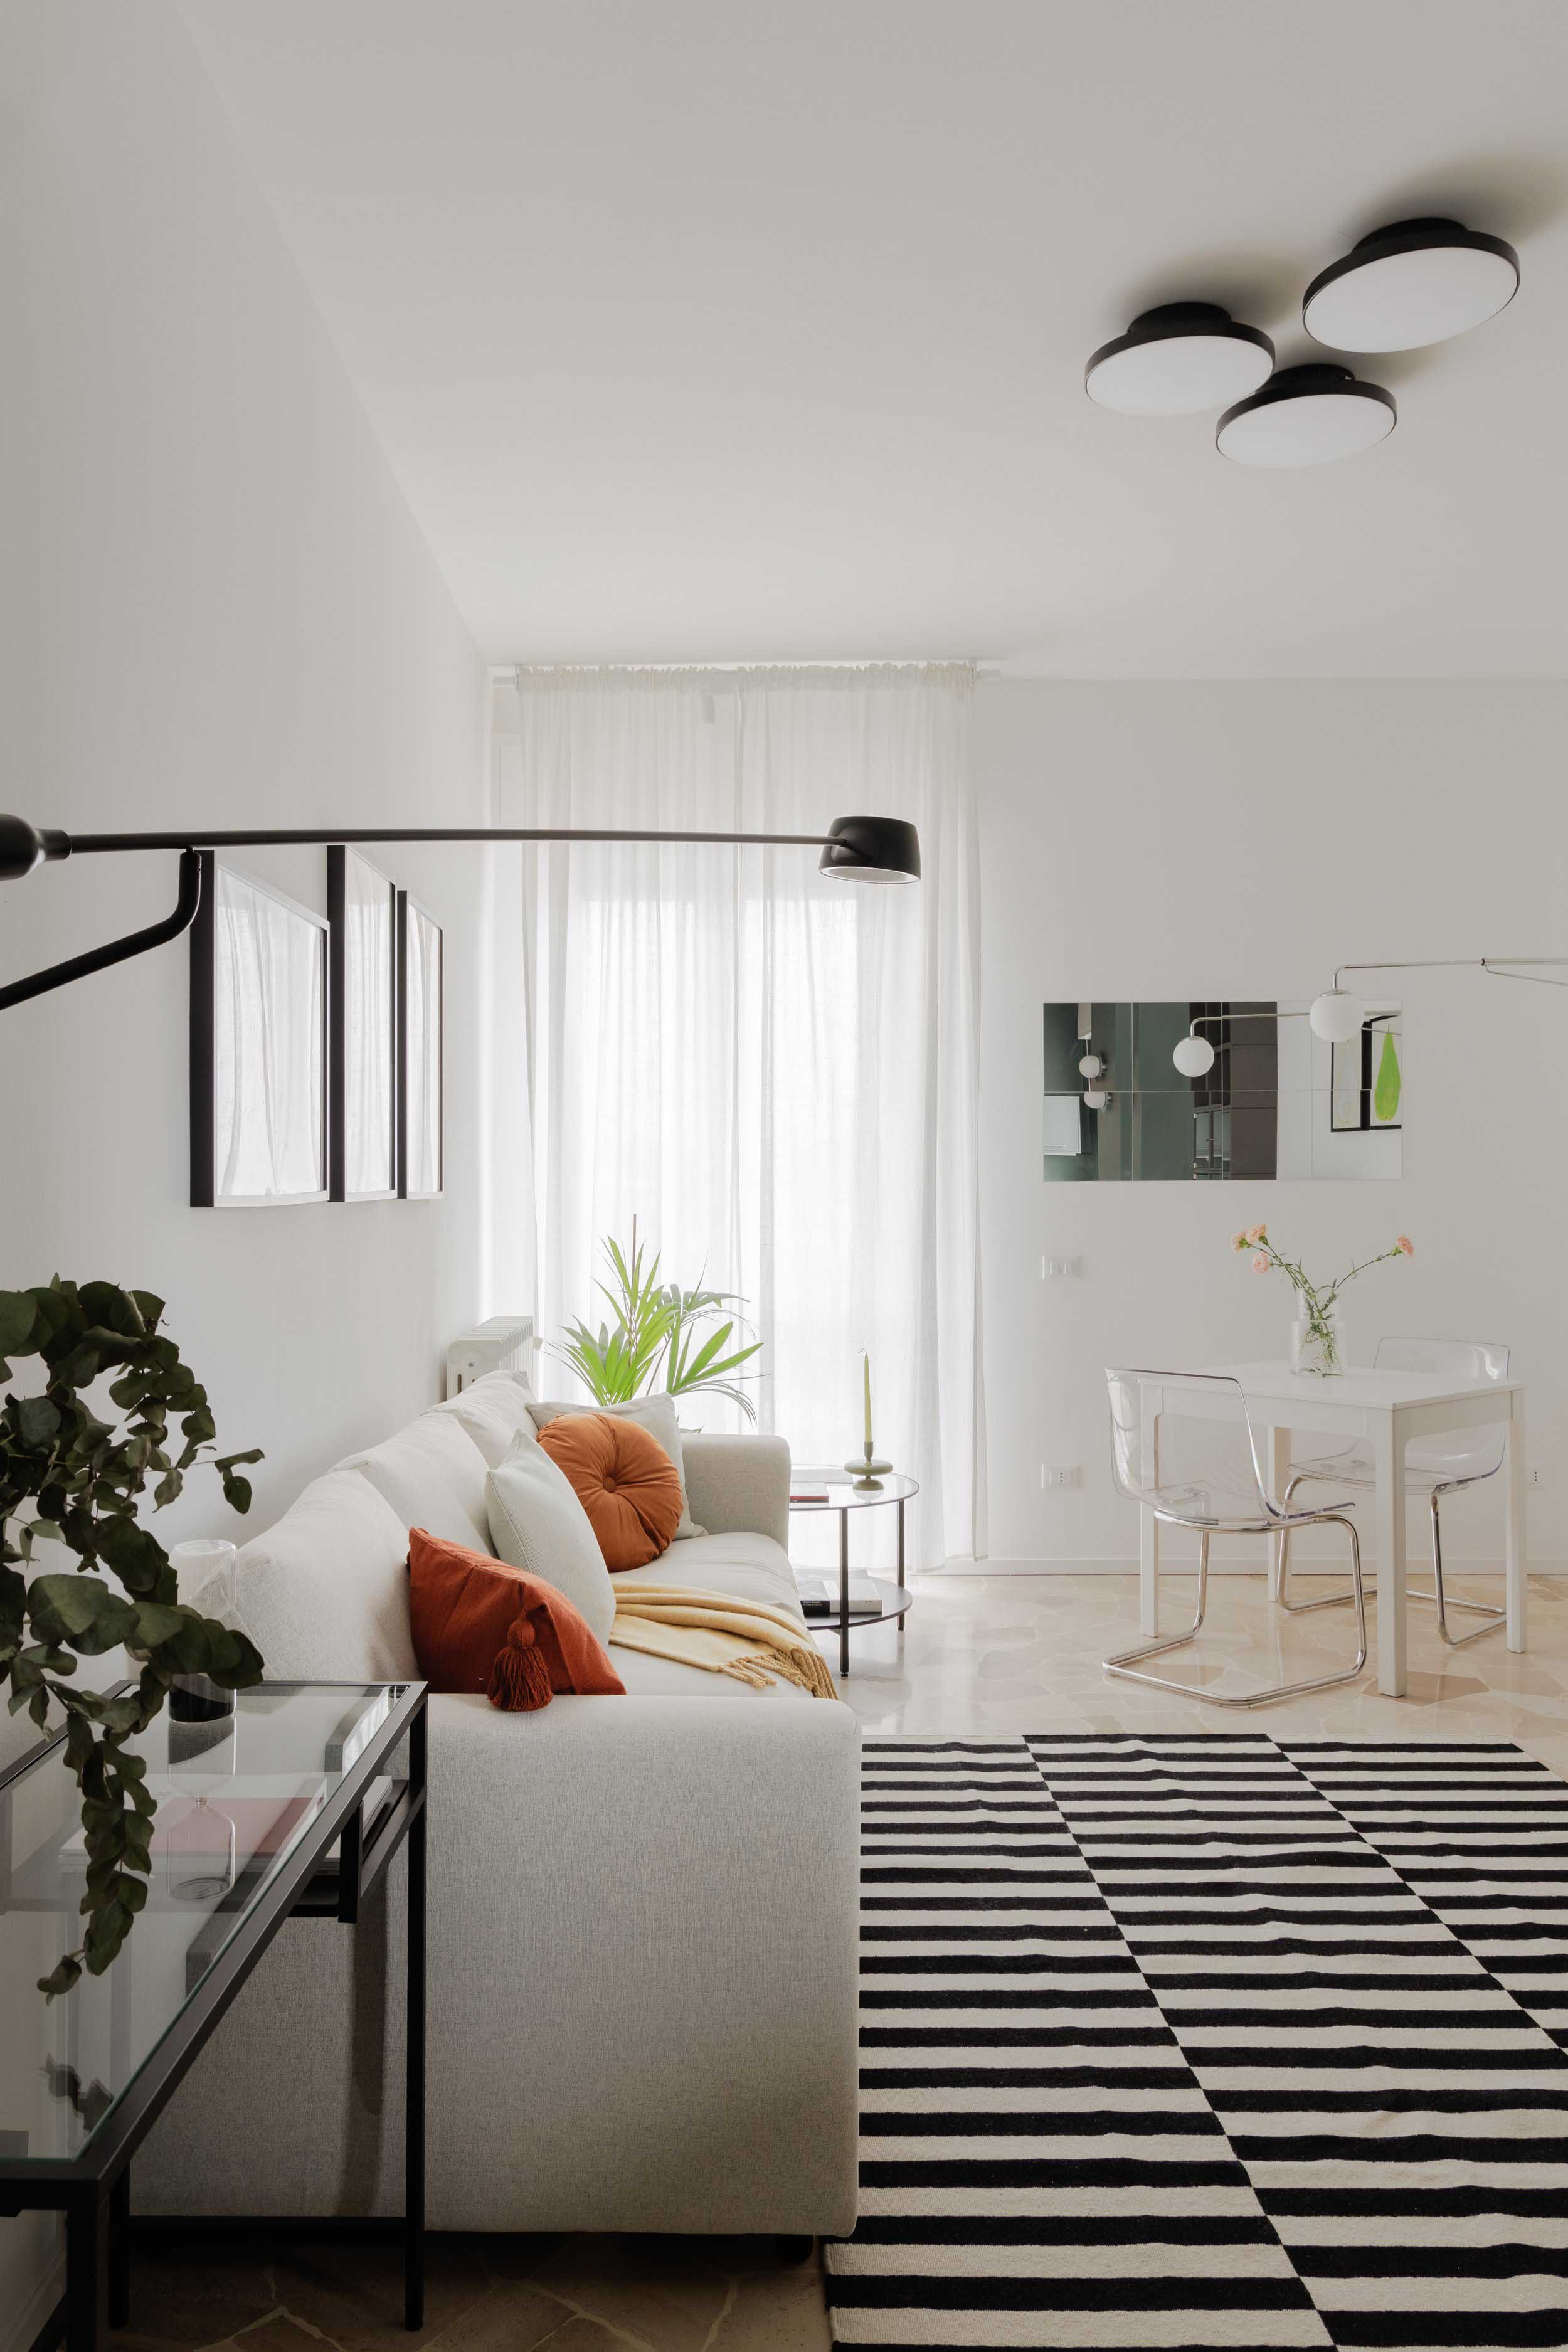 住宅设计,公寓设计,小户型设计,50㎡公寓设计,公寓设计案例,公寓设计方案,Be.Arch Hub,米兰,橄榄色